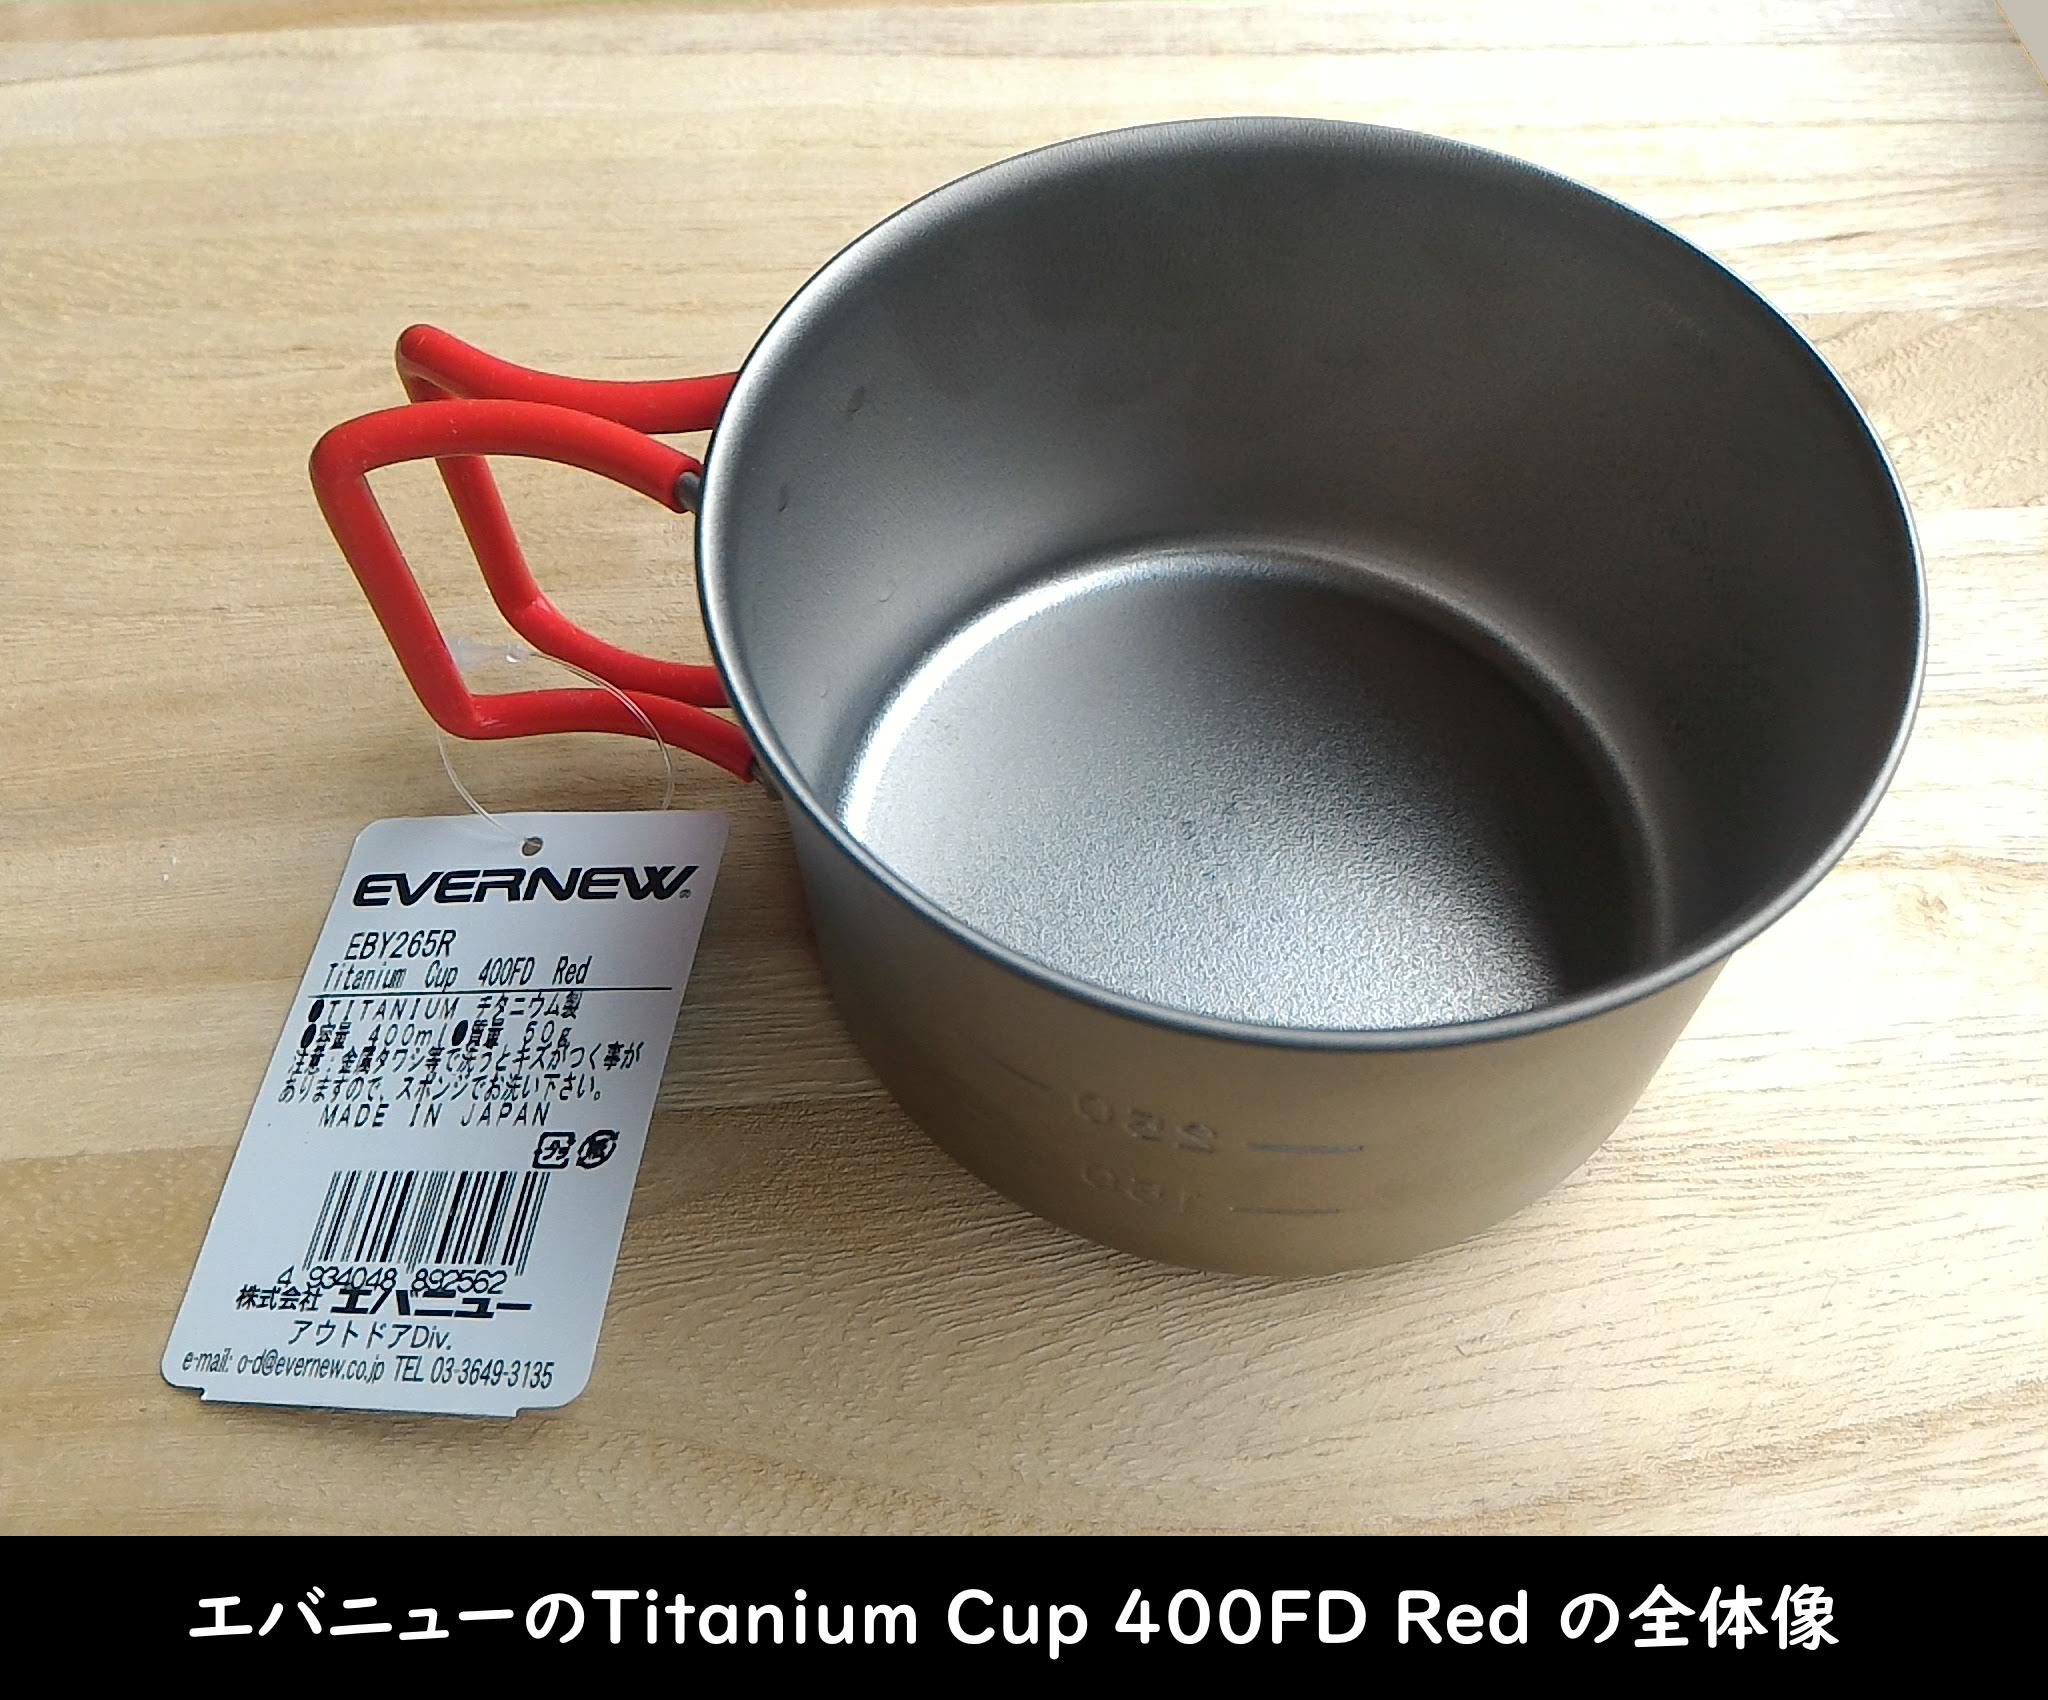 エバニューの「Titanium Cup 400FD Red」全体像